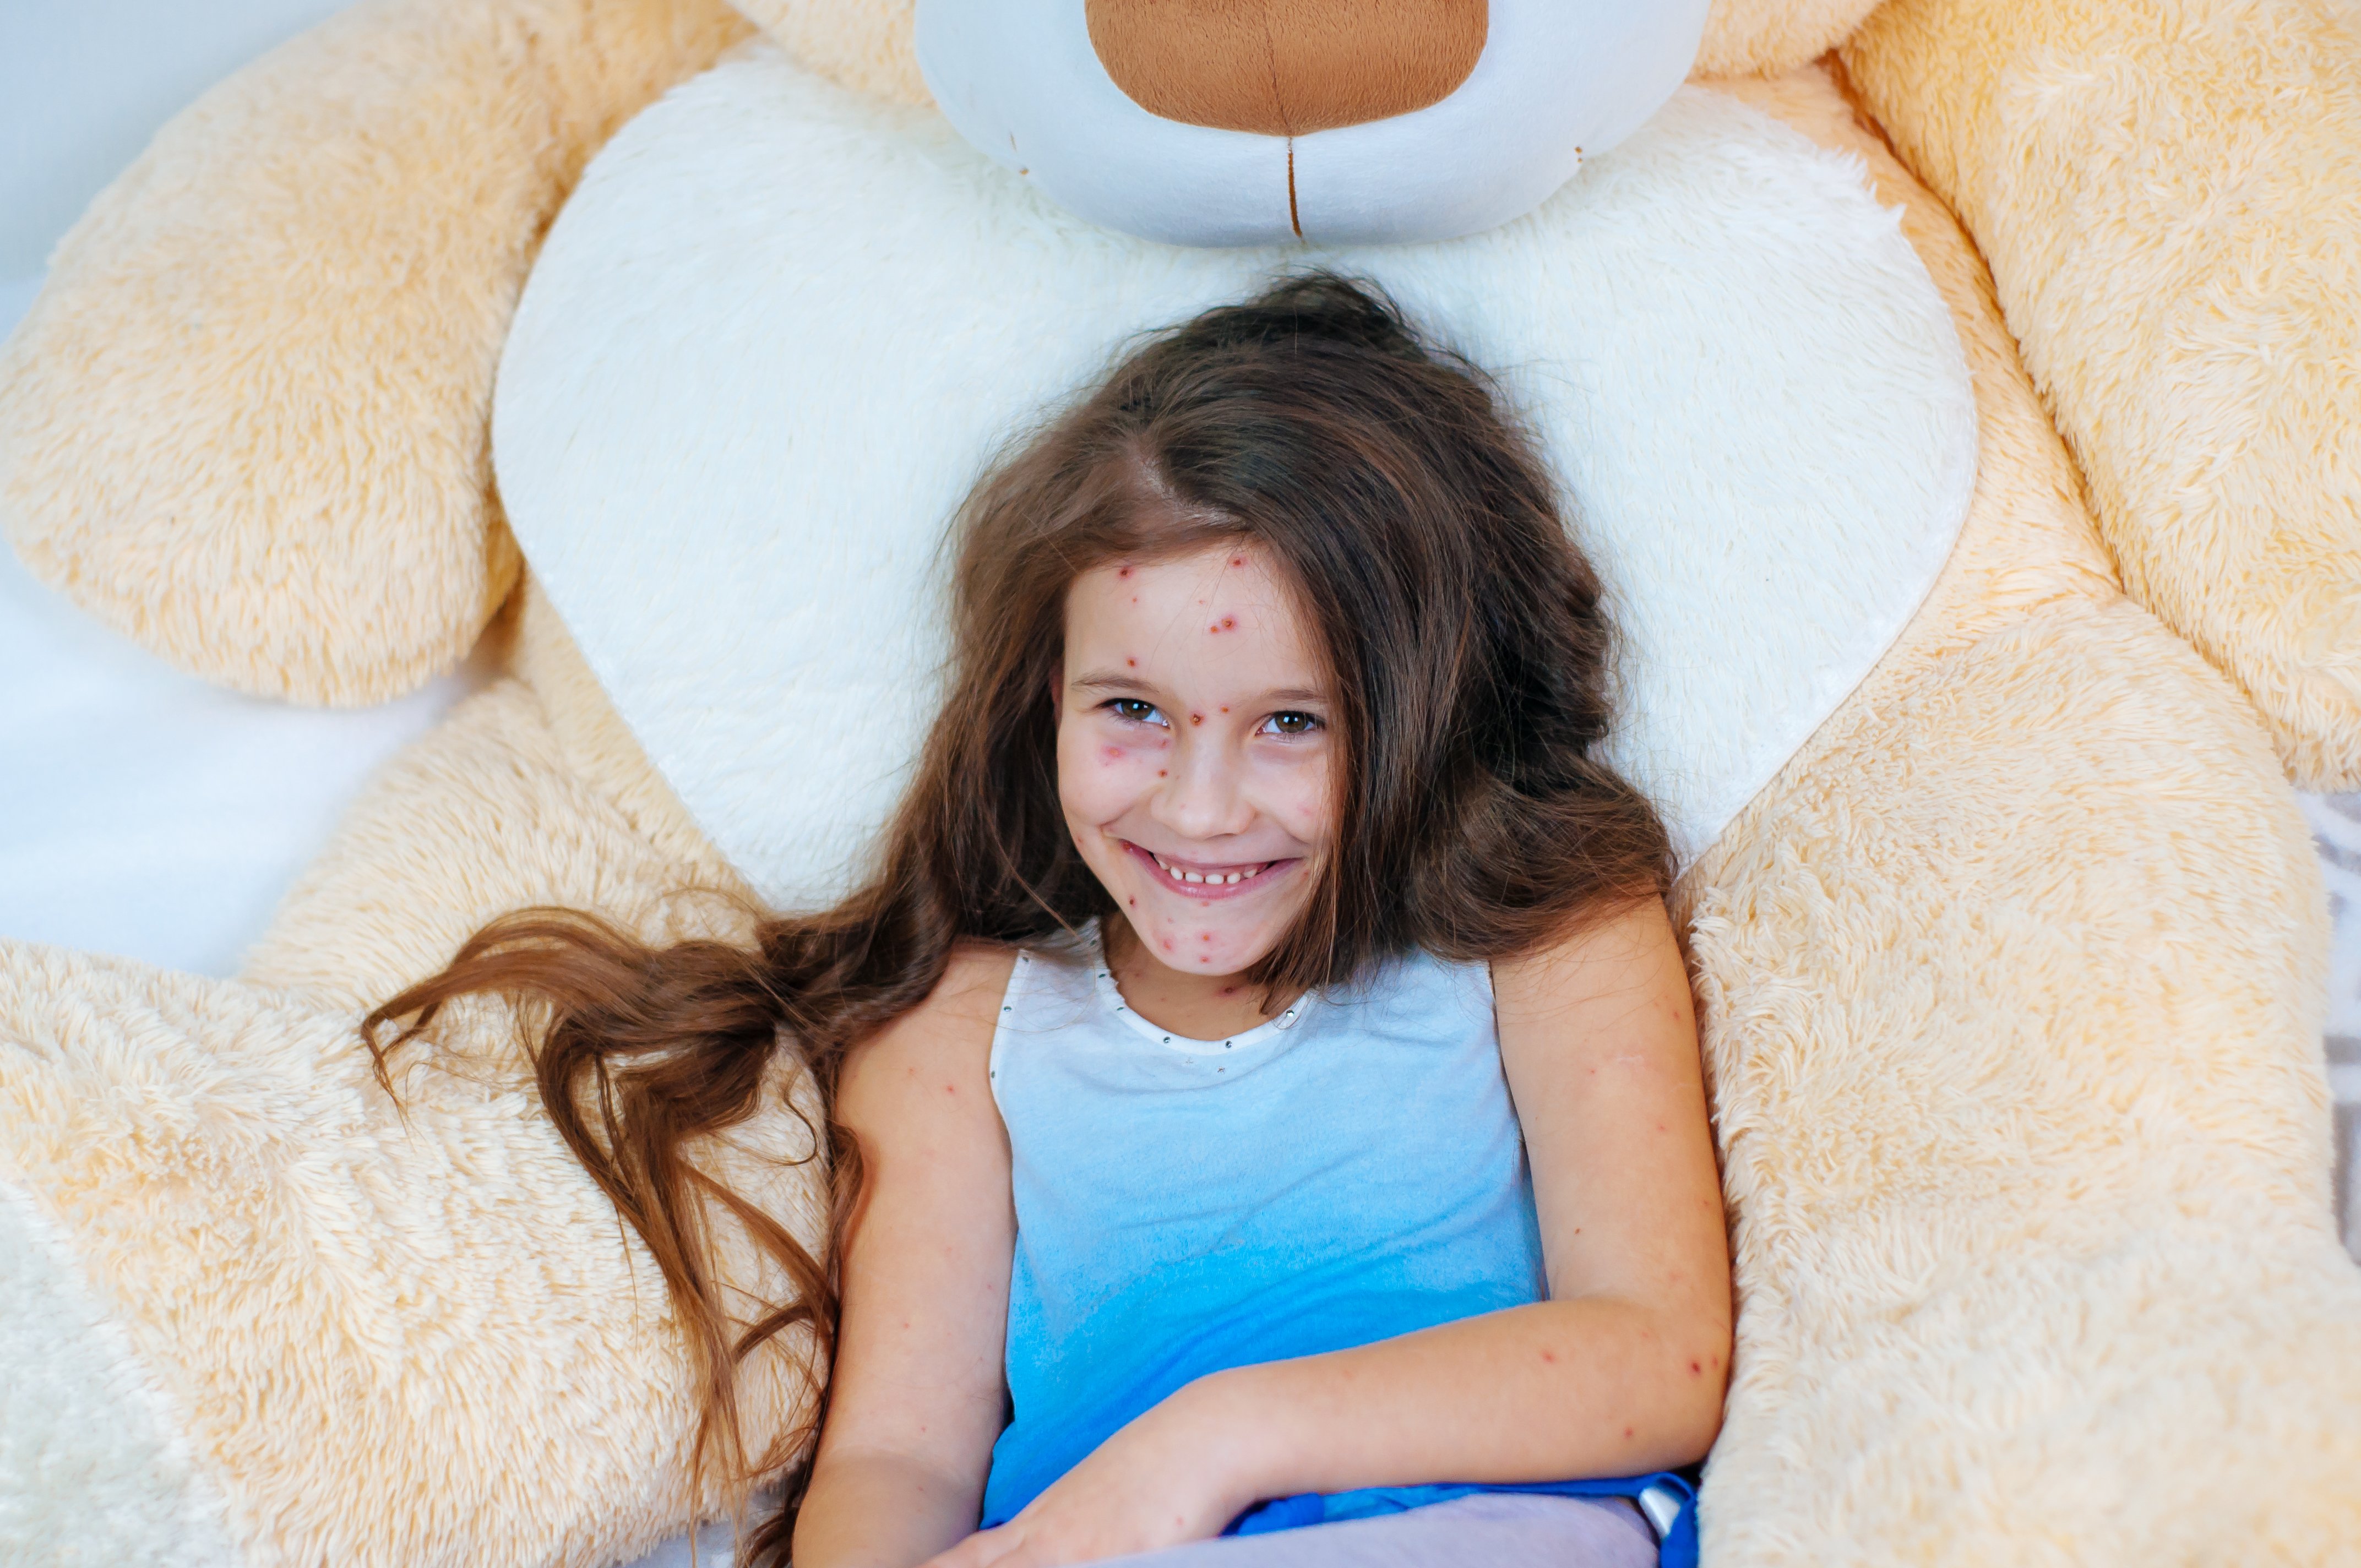 La varicelle chez l'enfant. | Photo : Shutterstock